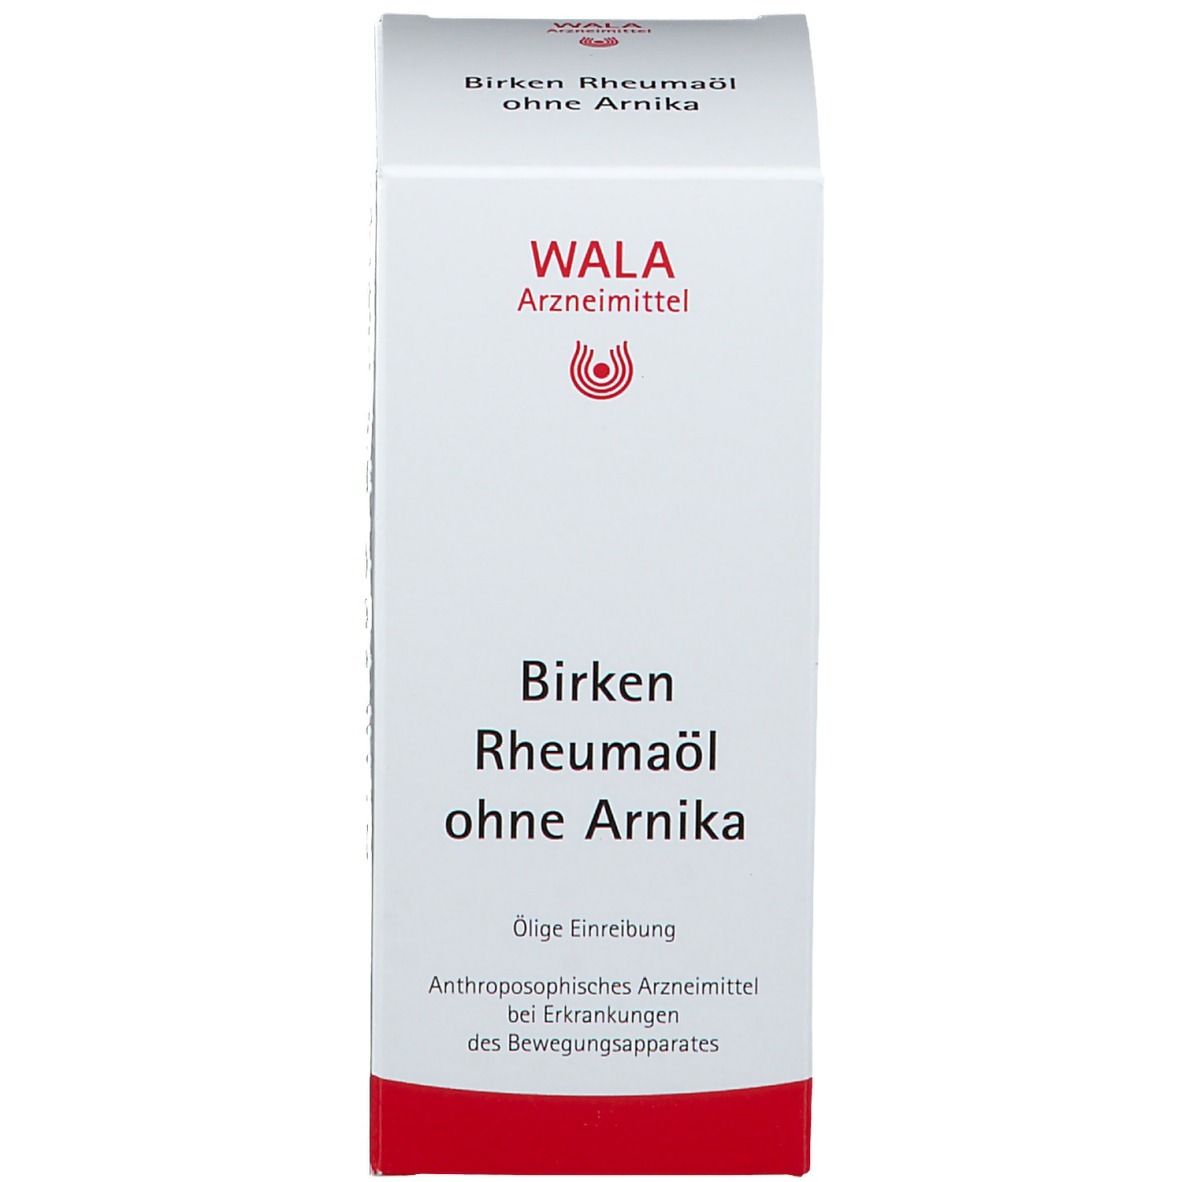 WALA® Birken Rheumaöl ohne Arnika